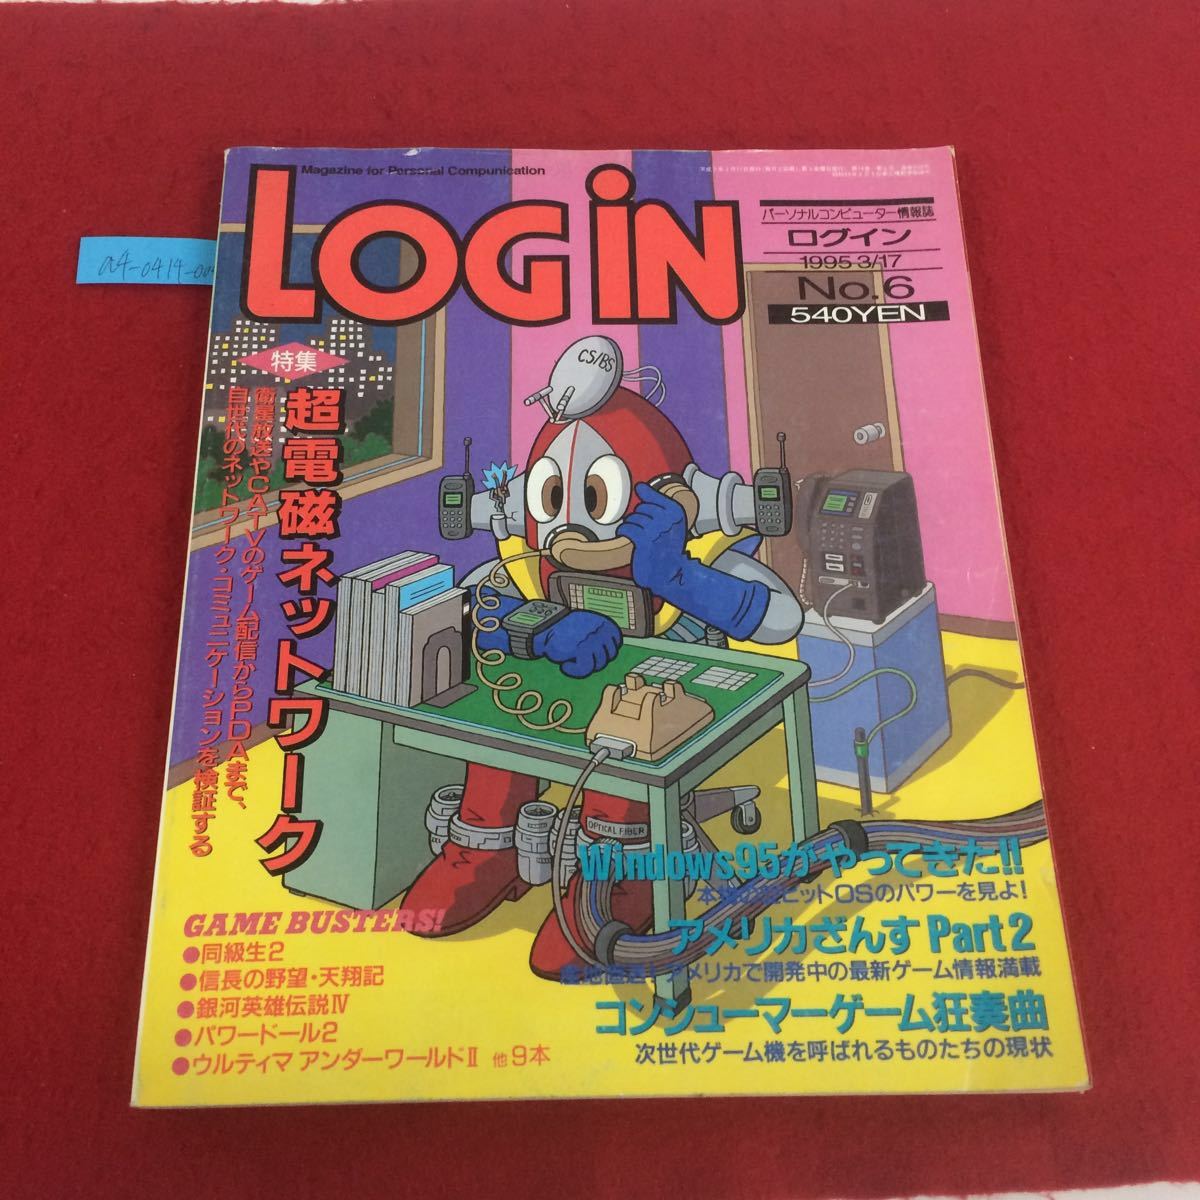 a4-0414-004 персональный компьютер - информация журнал логин специальный выпуск супер электромагнитный сеть ASCII 1995 год выпуск *1